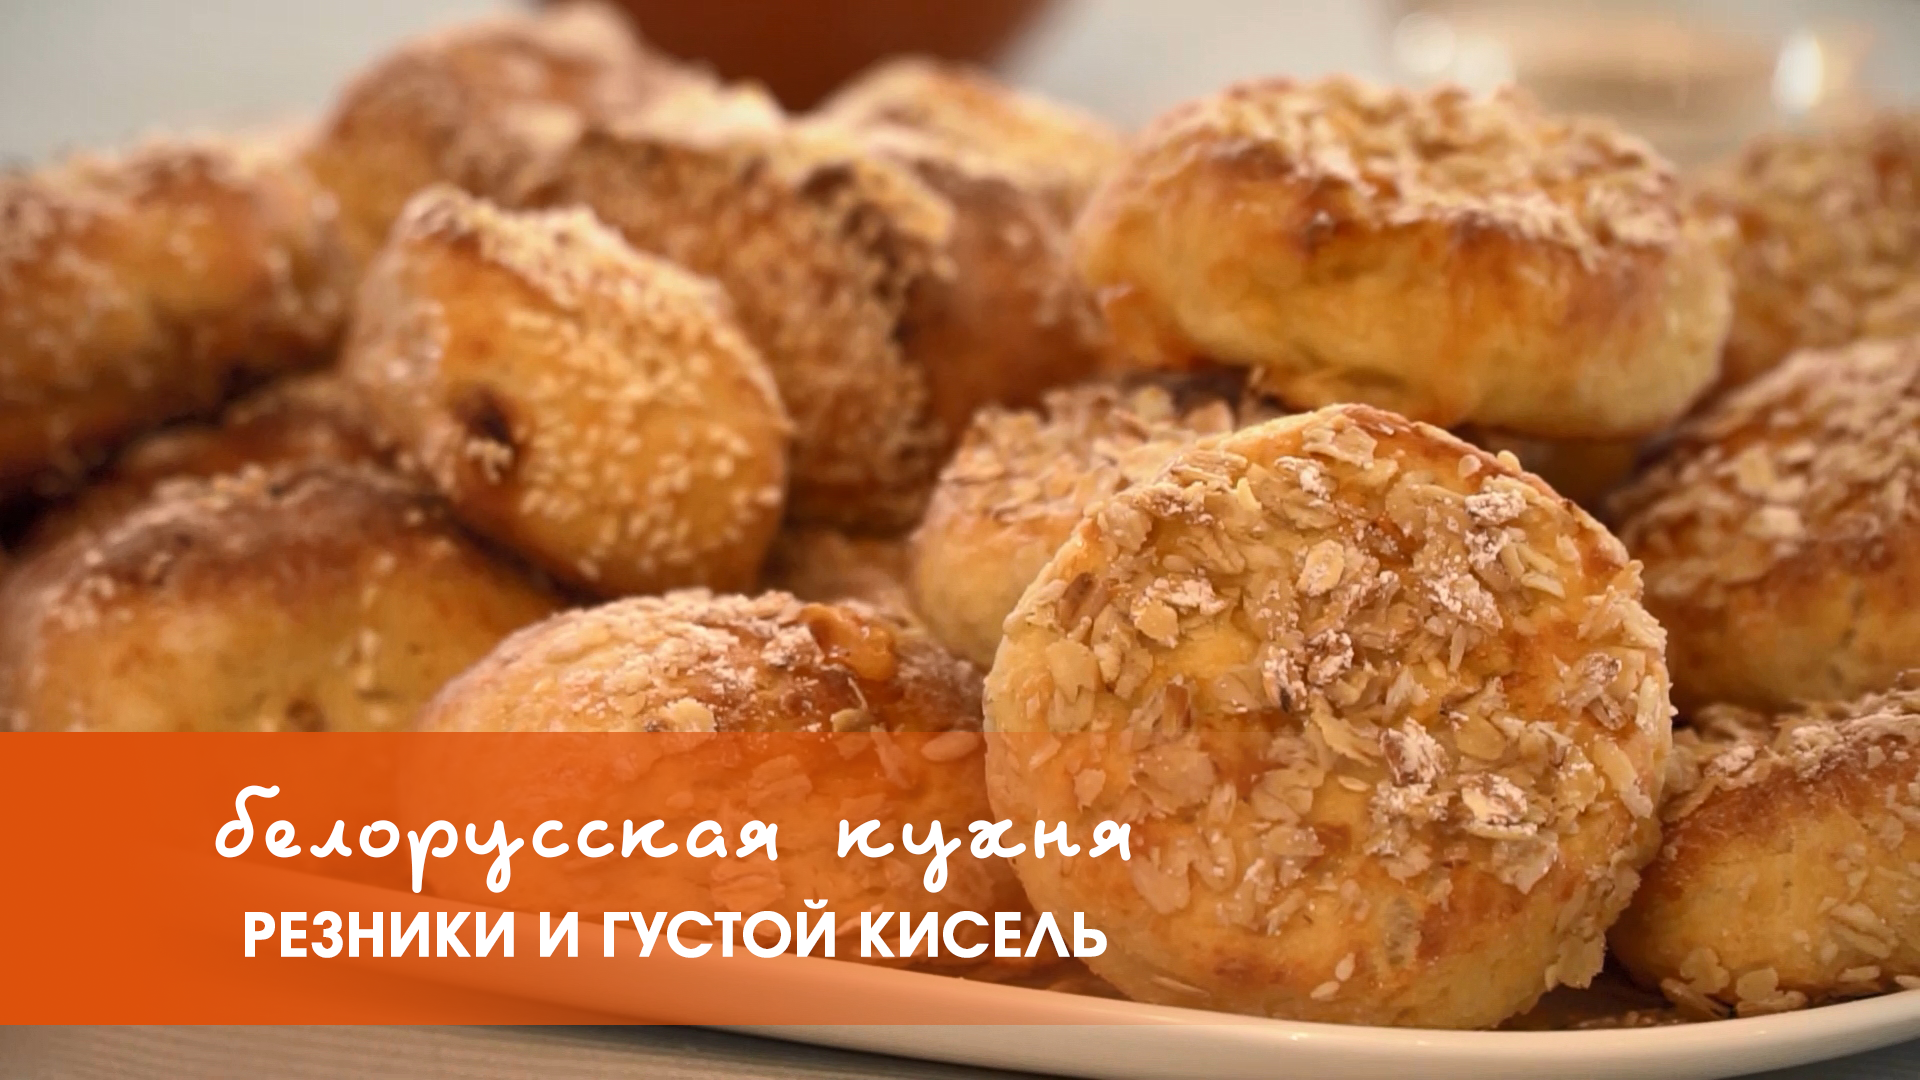 Белорусская кухня: резники и густой кисель